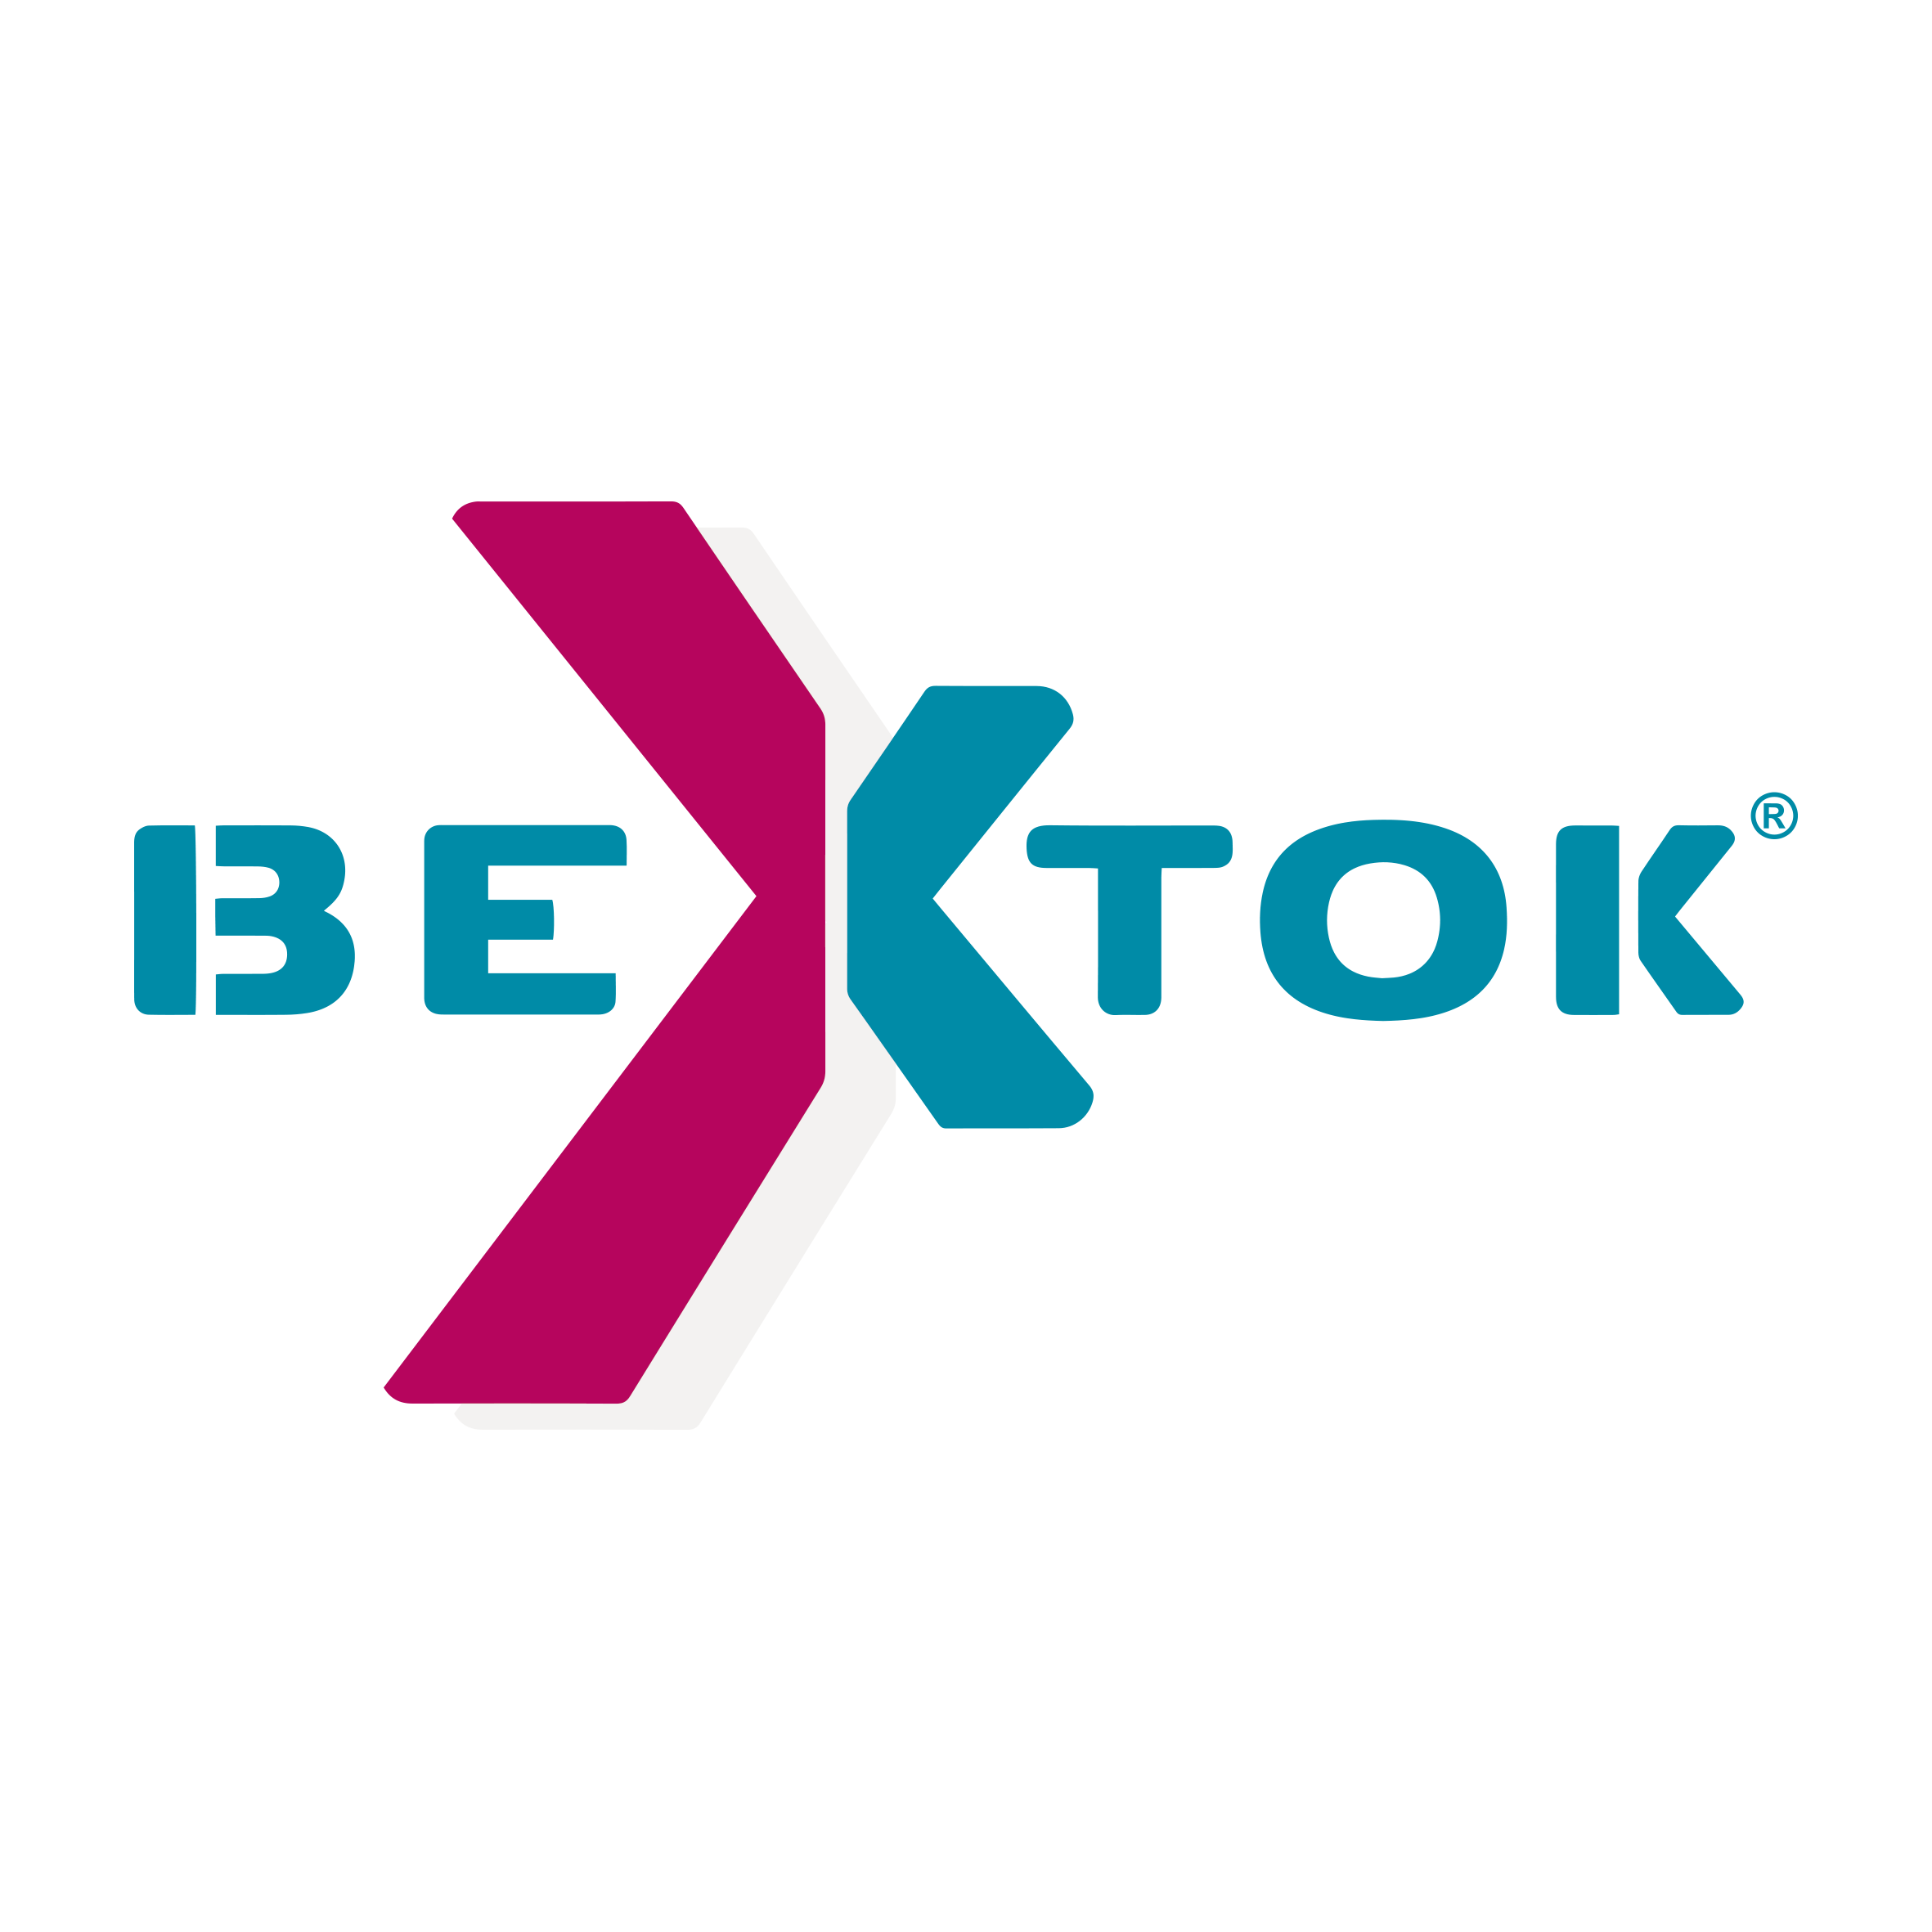 Bextok